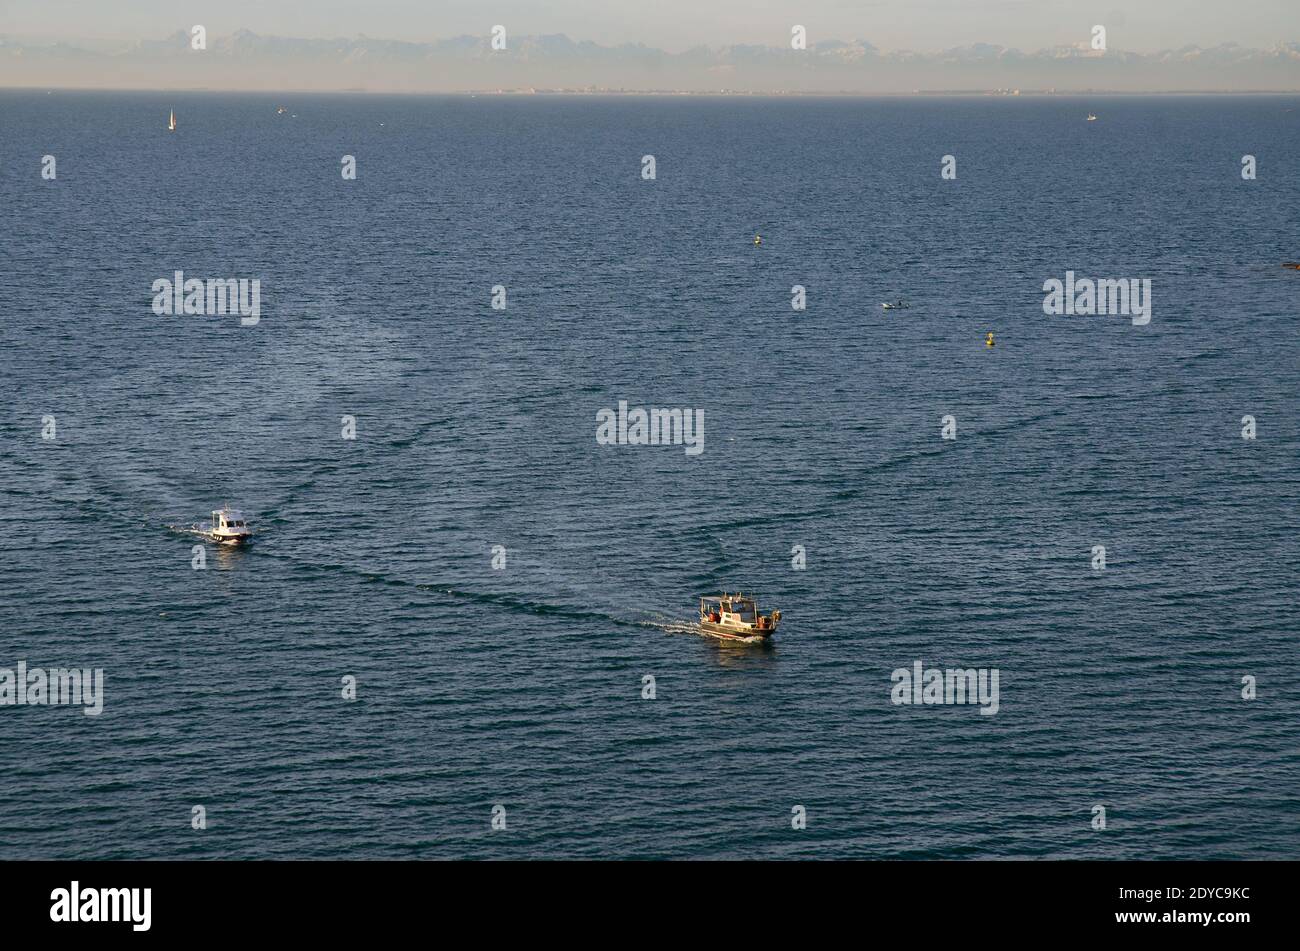 Hintergrund von herrlichem Blick auf die mehrere Boote segeln entlang Adria blauen Meer gegen schneebedeckten alpen Berge. Stockfoto